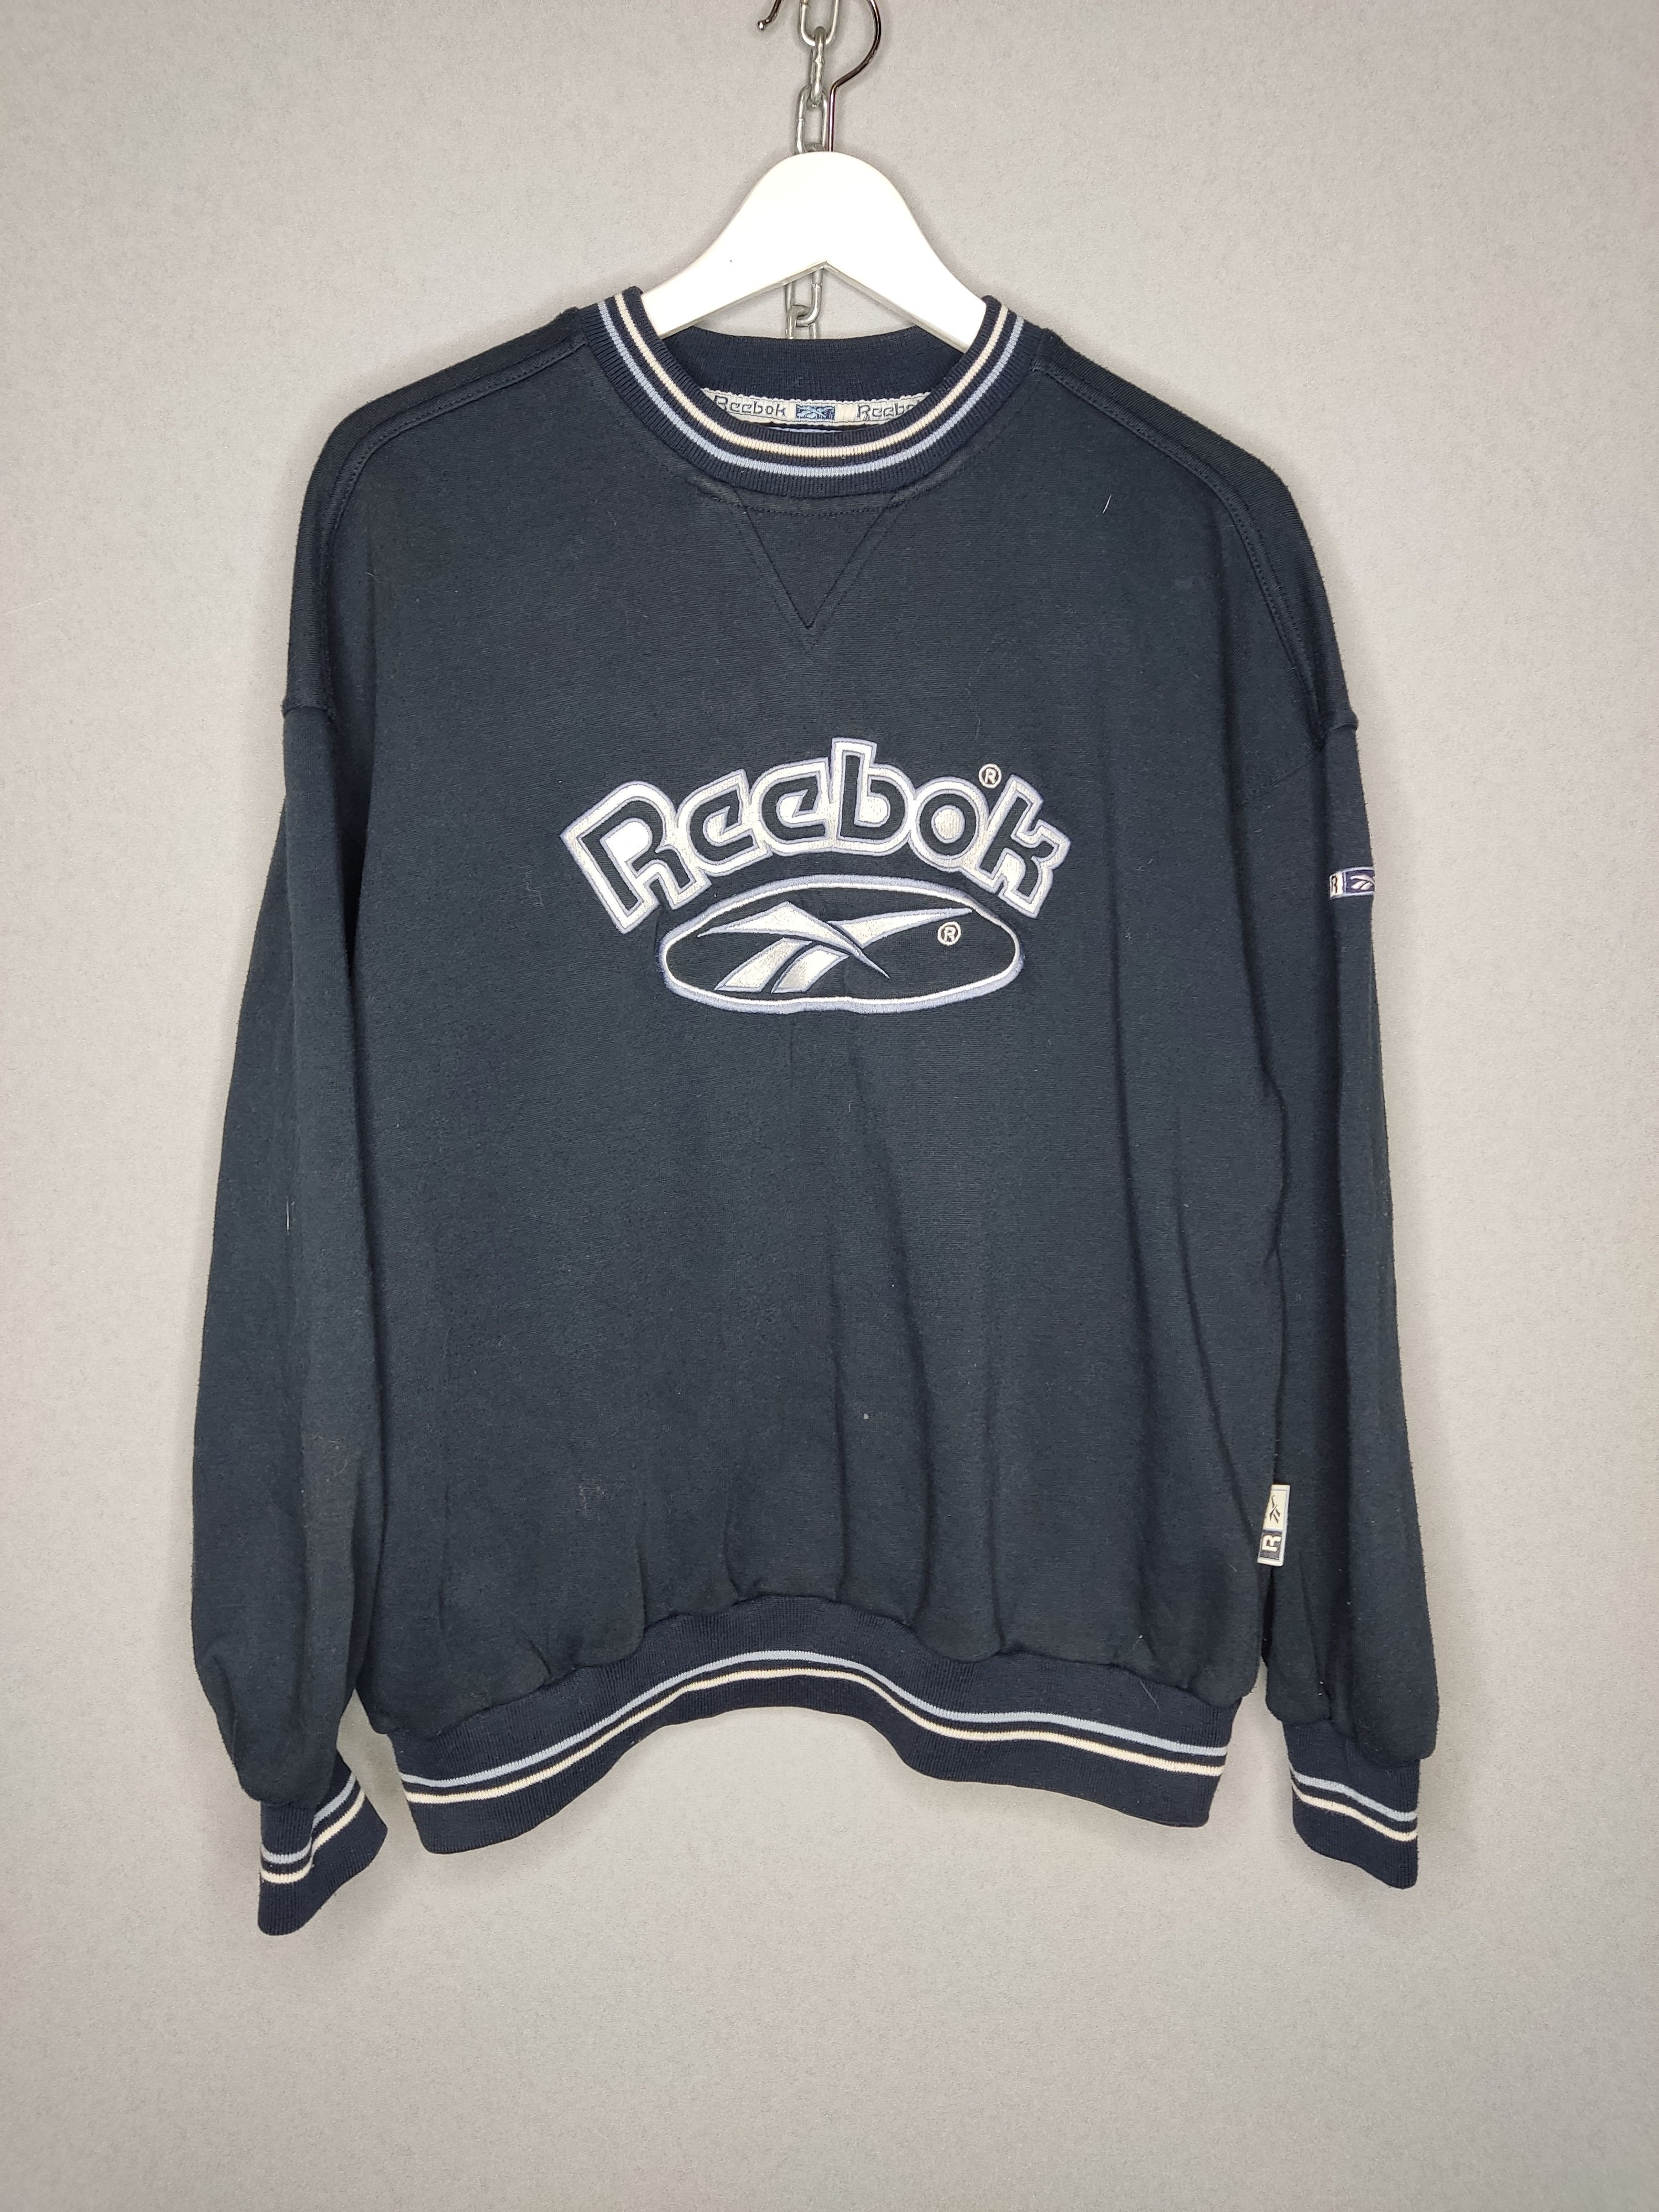 Pre-owned Reebok X Vintage Reebok Vintage Sweatshirt Embroidered Big Logo In Black